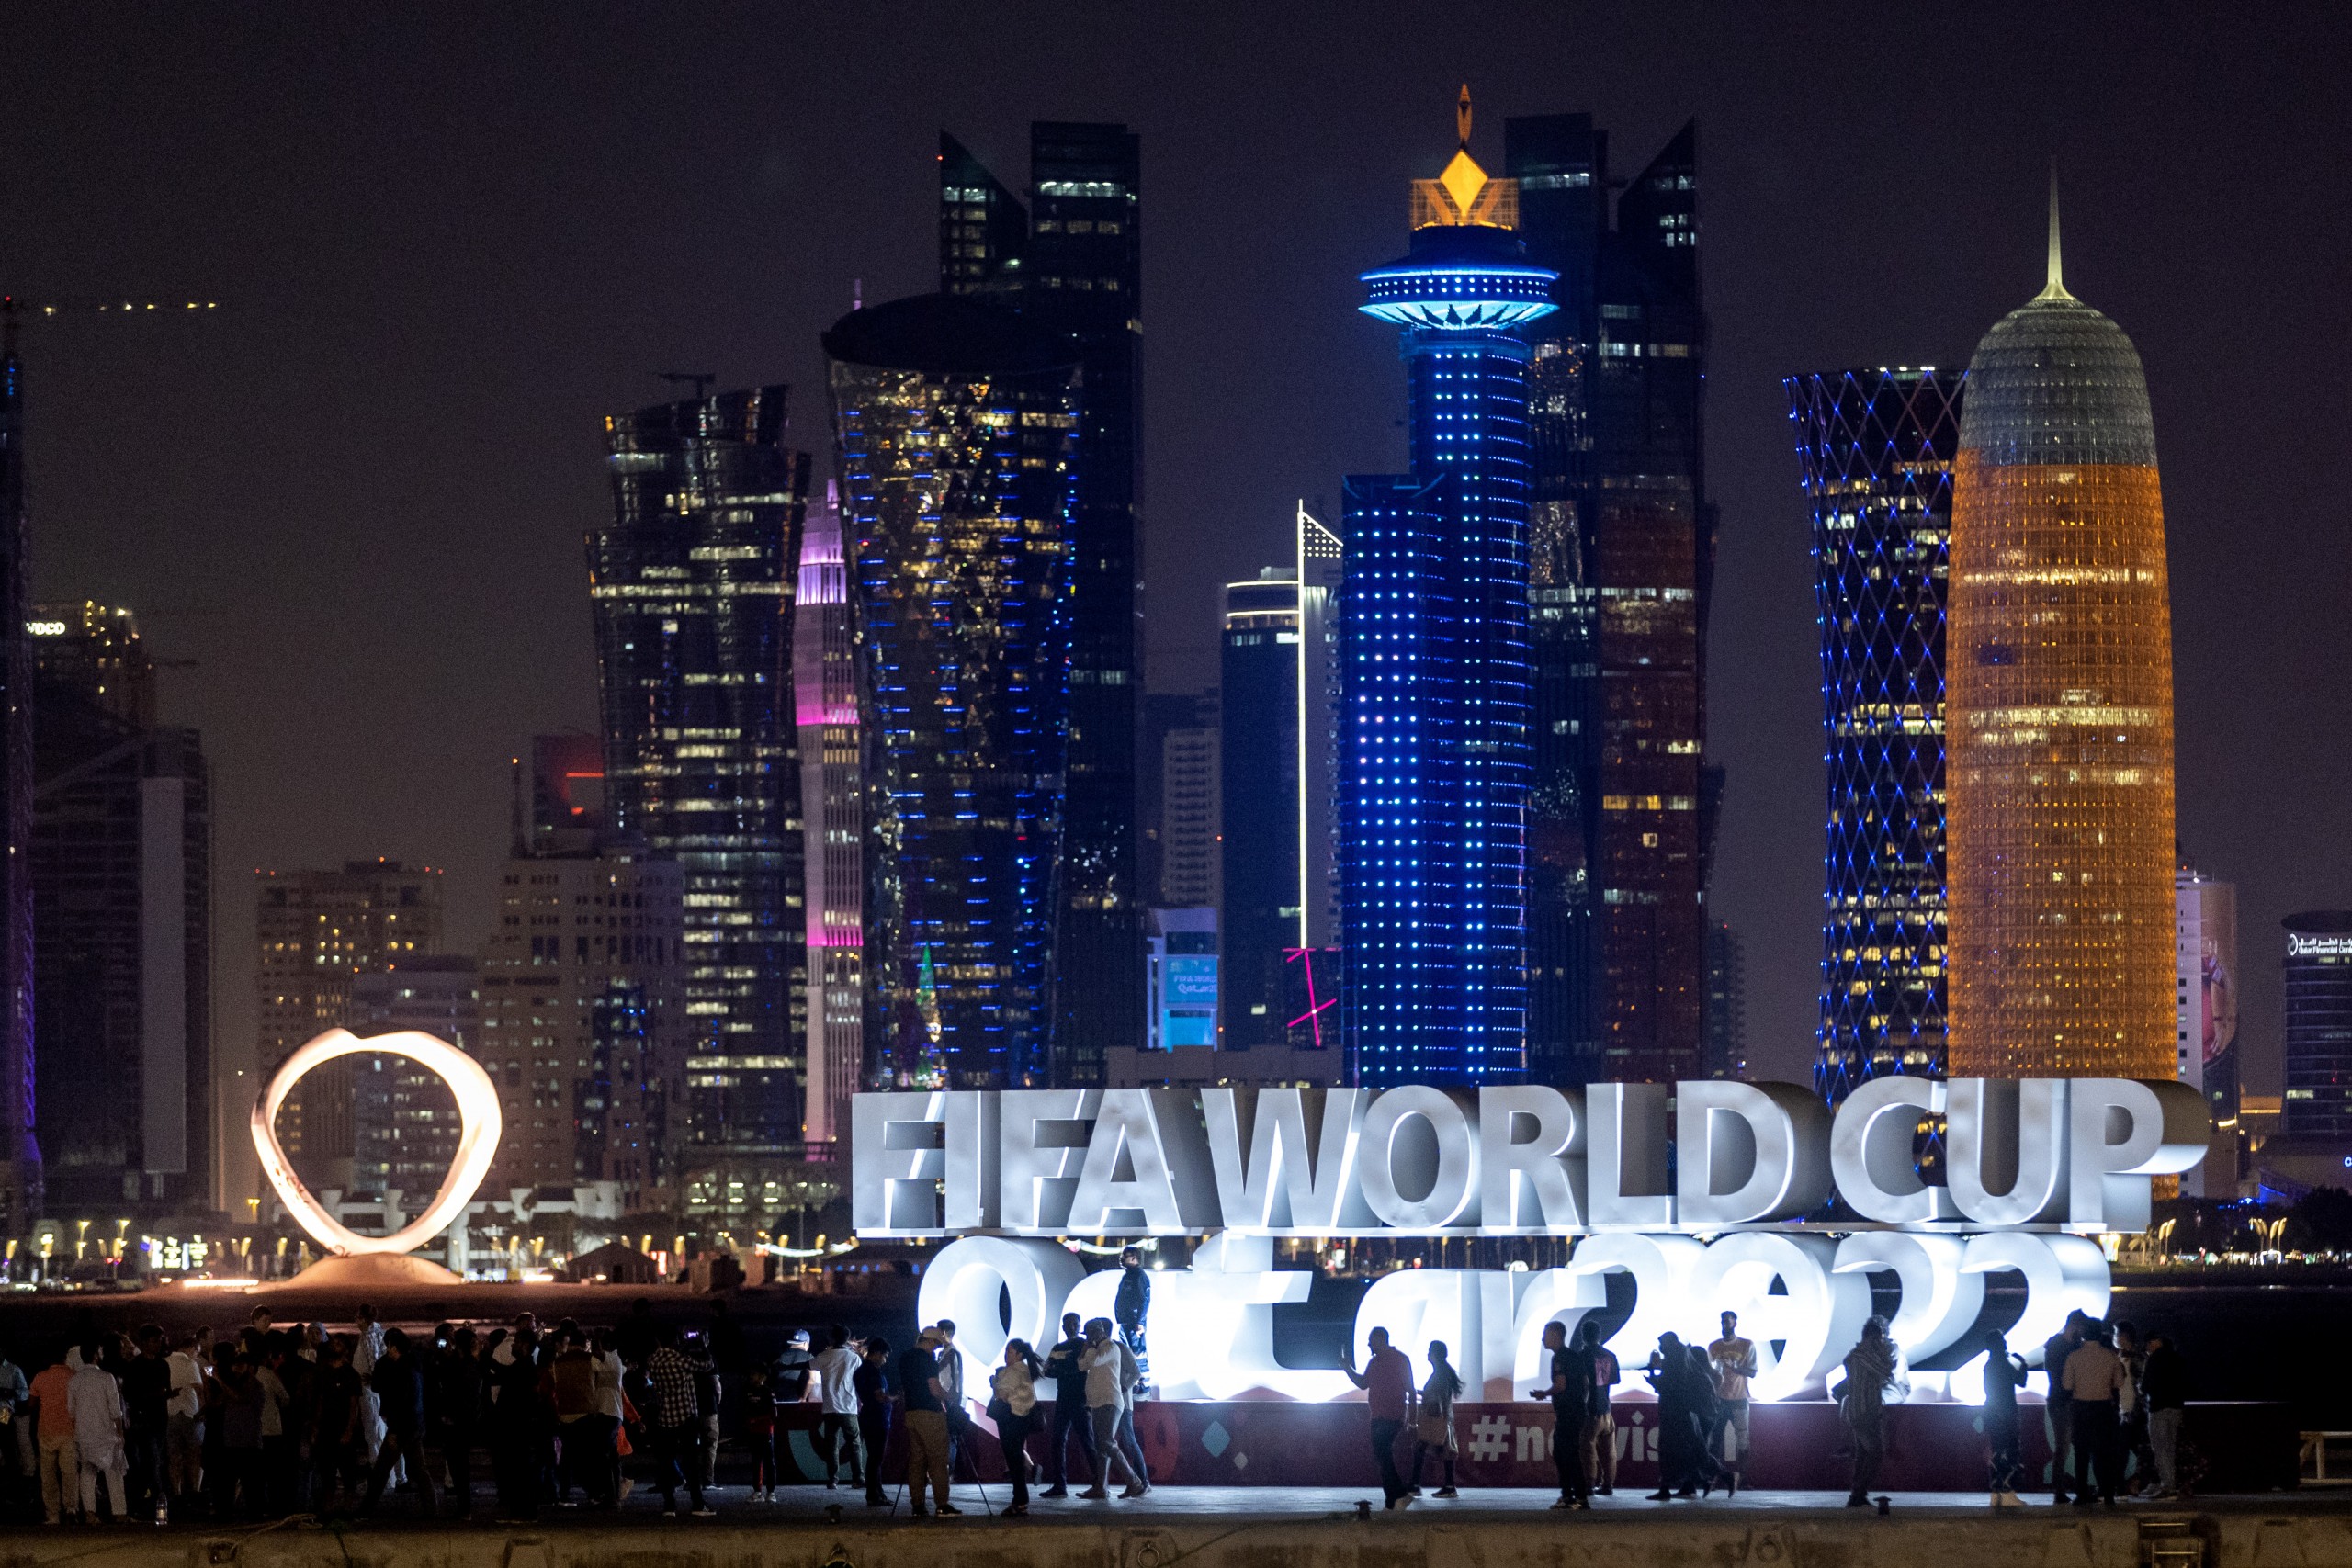 20.11.2022., Doha, Katar - FIFA Svjetsko prvenstvo Katar 2022.  Danas je svecano otvoreno FIFA Svjetsko nogometno prvenstvo Katar 2022. utakmicom Katar - Ekvador.
 Photo: Igor Kralj/PIXSELL